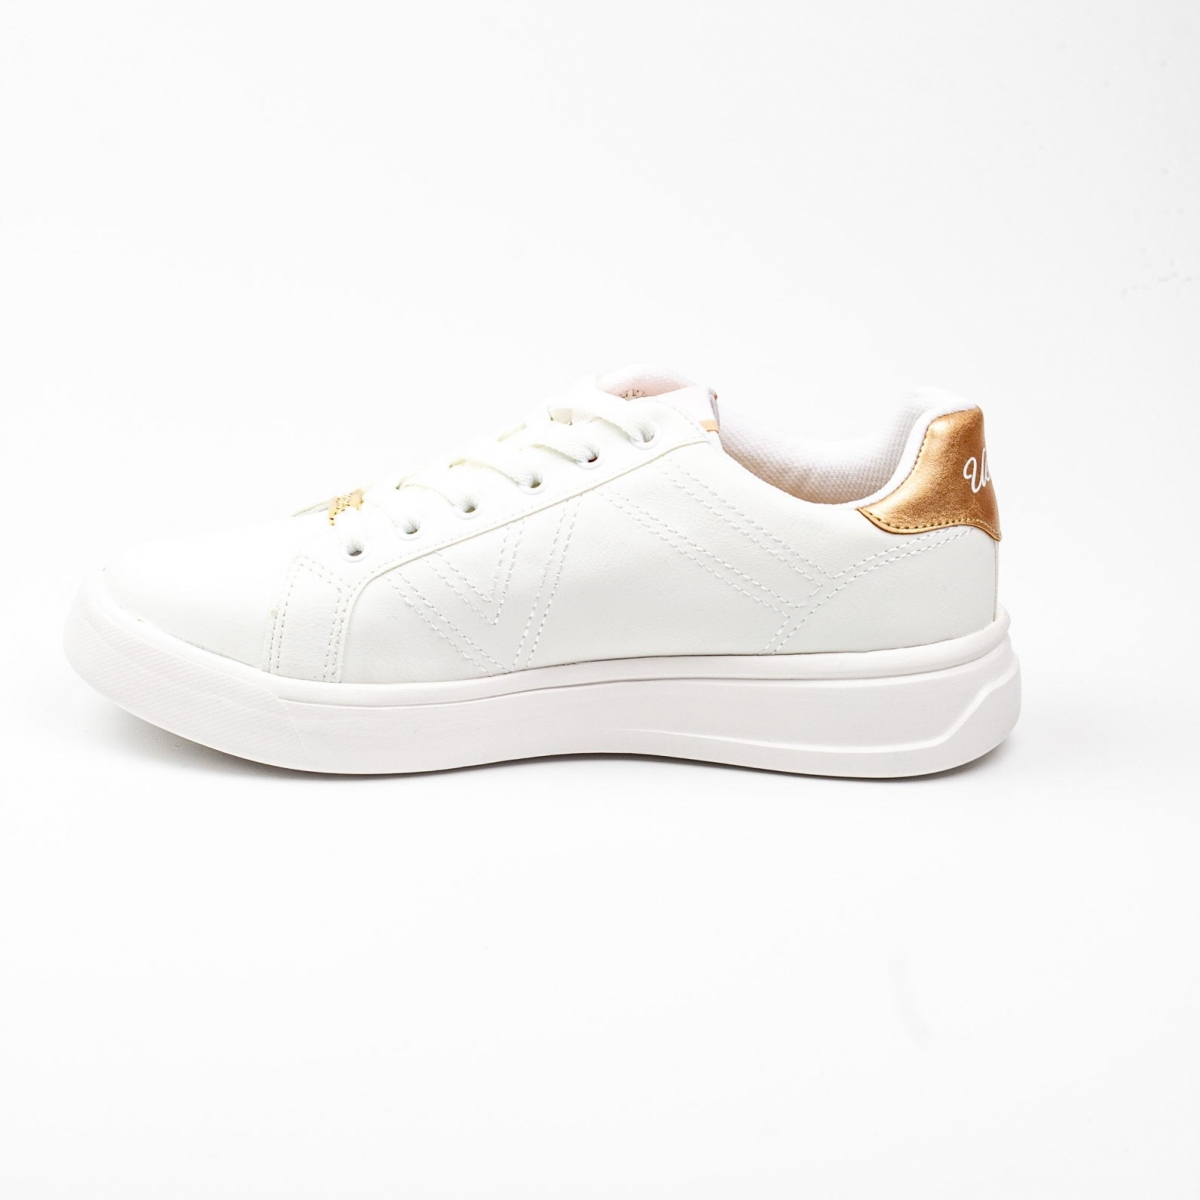 Flo Kadın Spor Ayakkabı Exxy Beyaz/White 21S040EXXY. 2